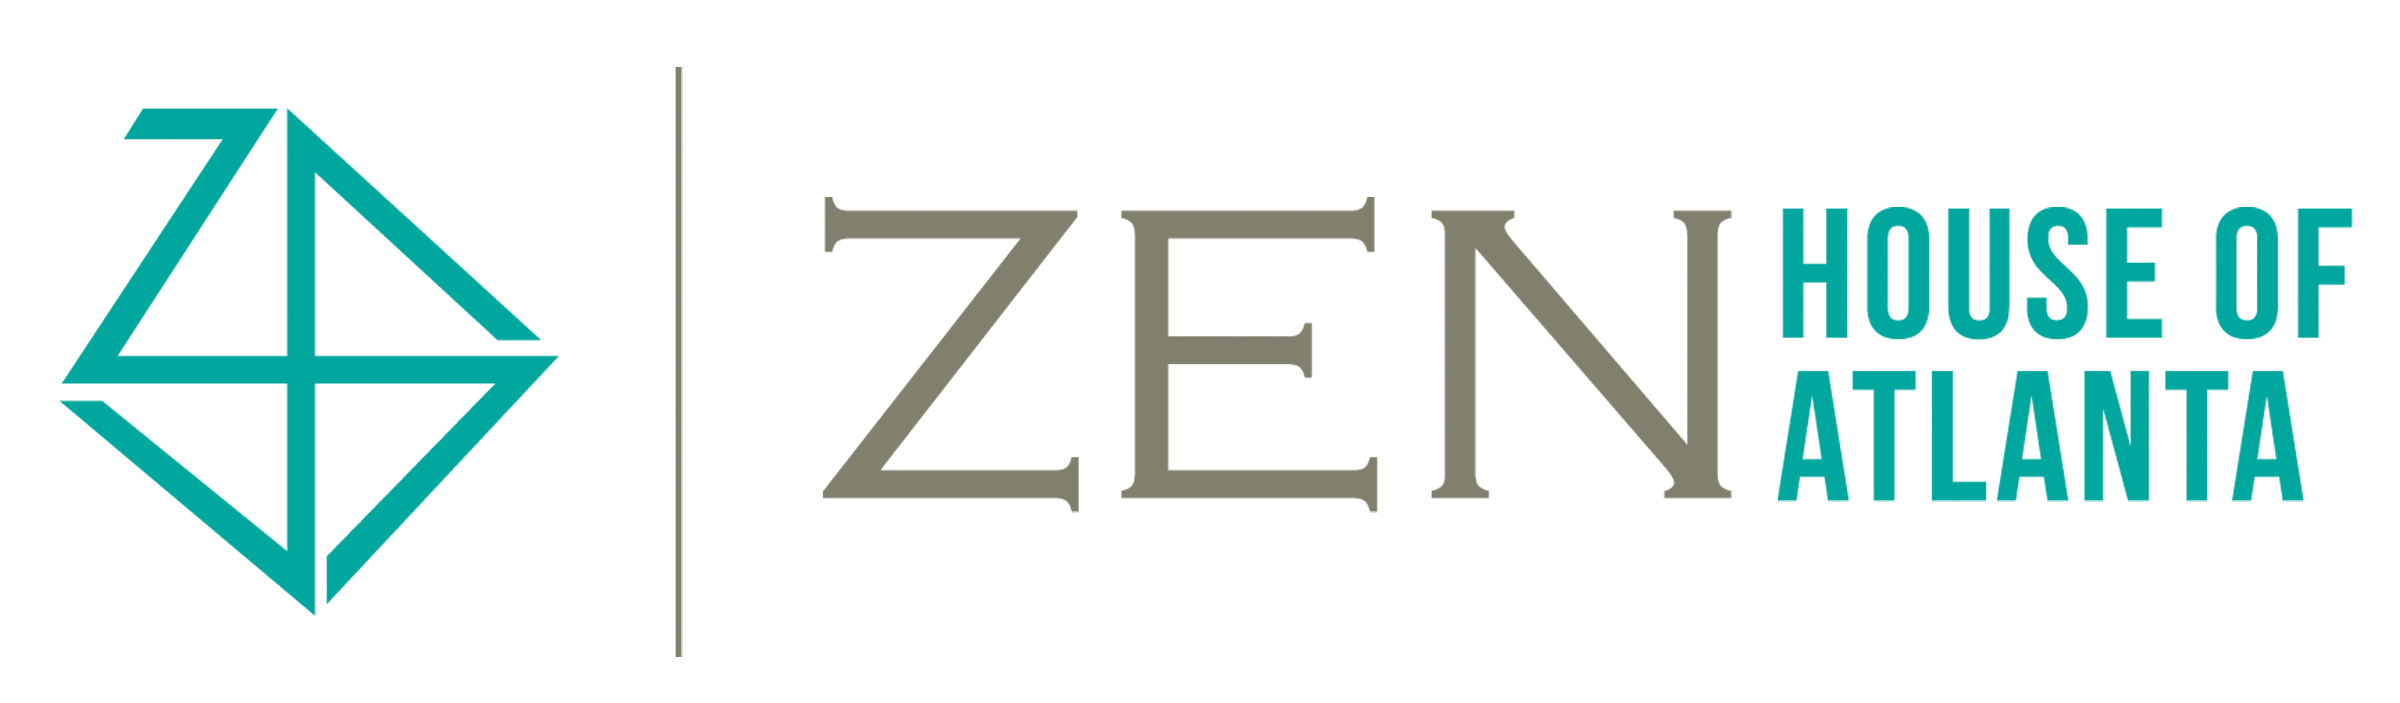 Zen House Logo - Shop House of Atlanta